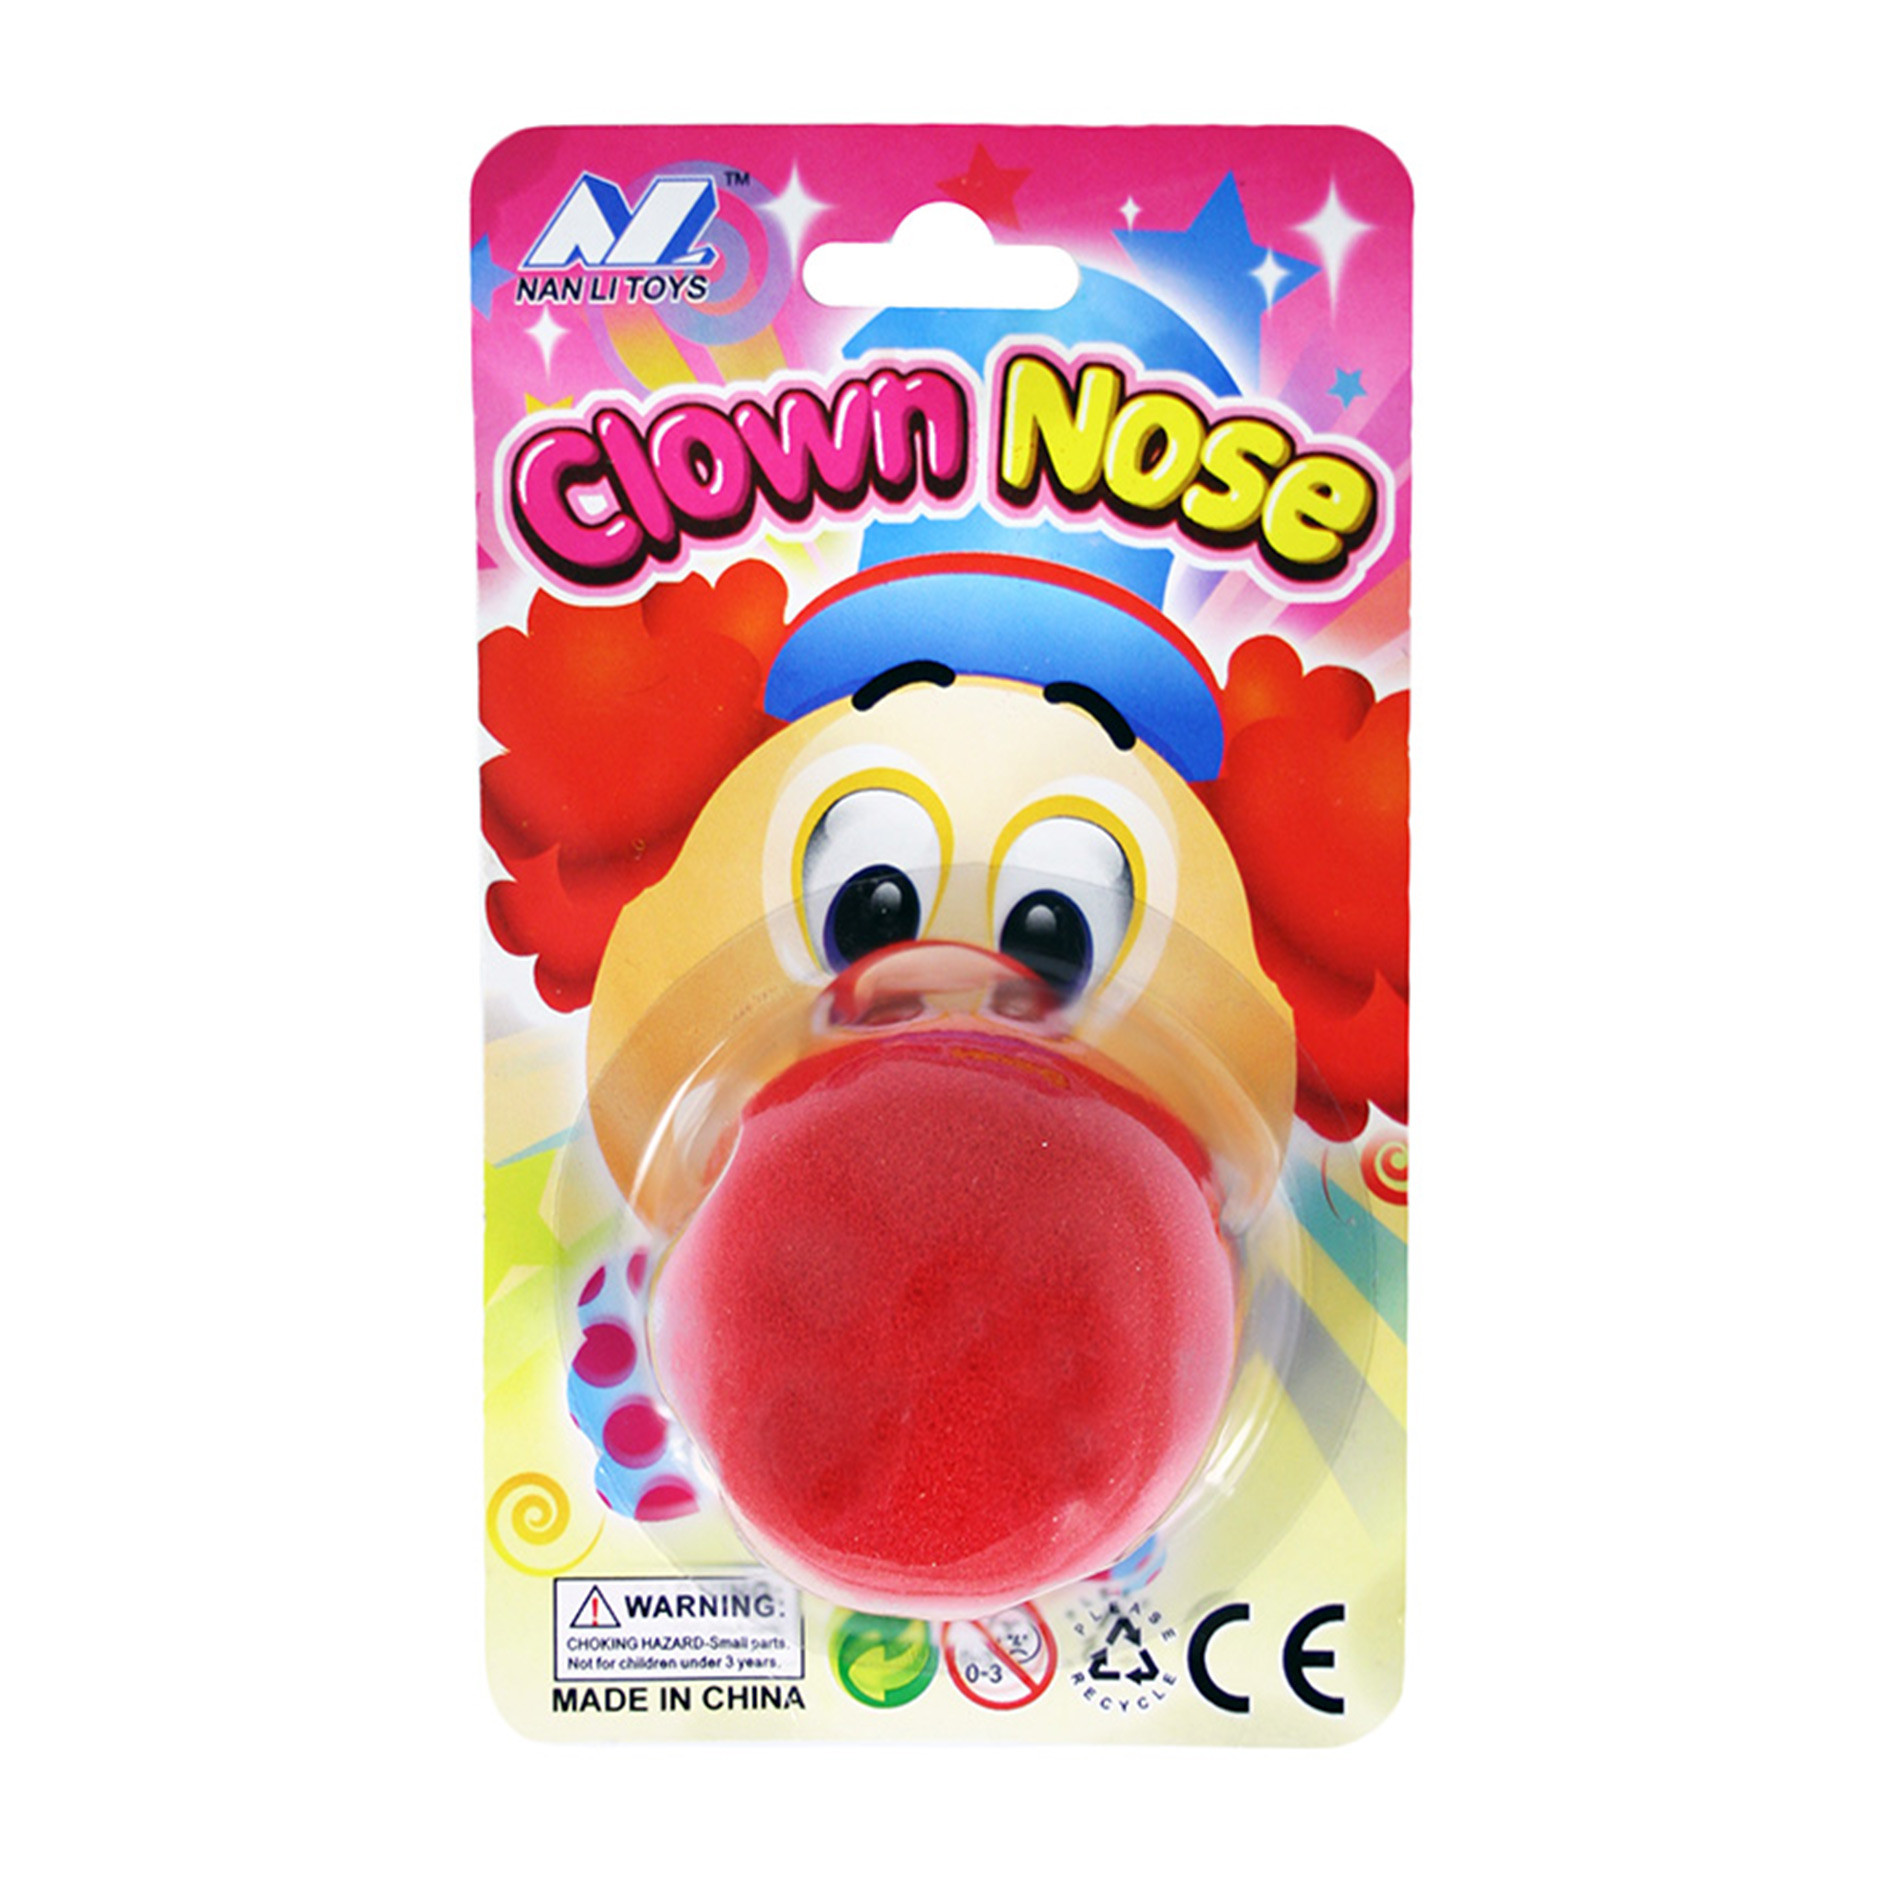 the foam clown nose